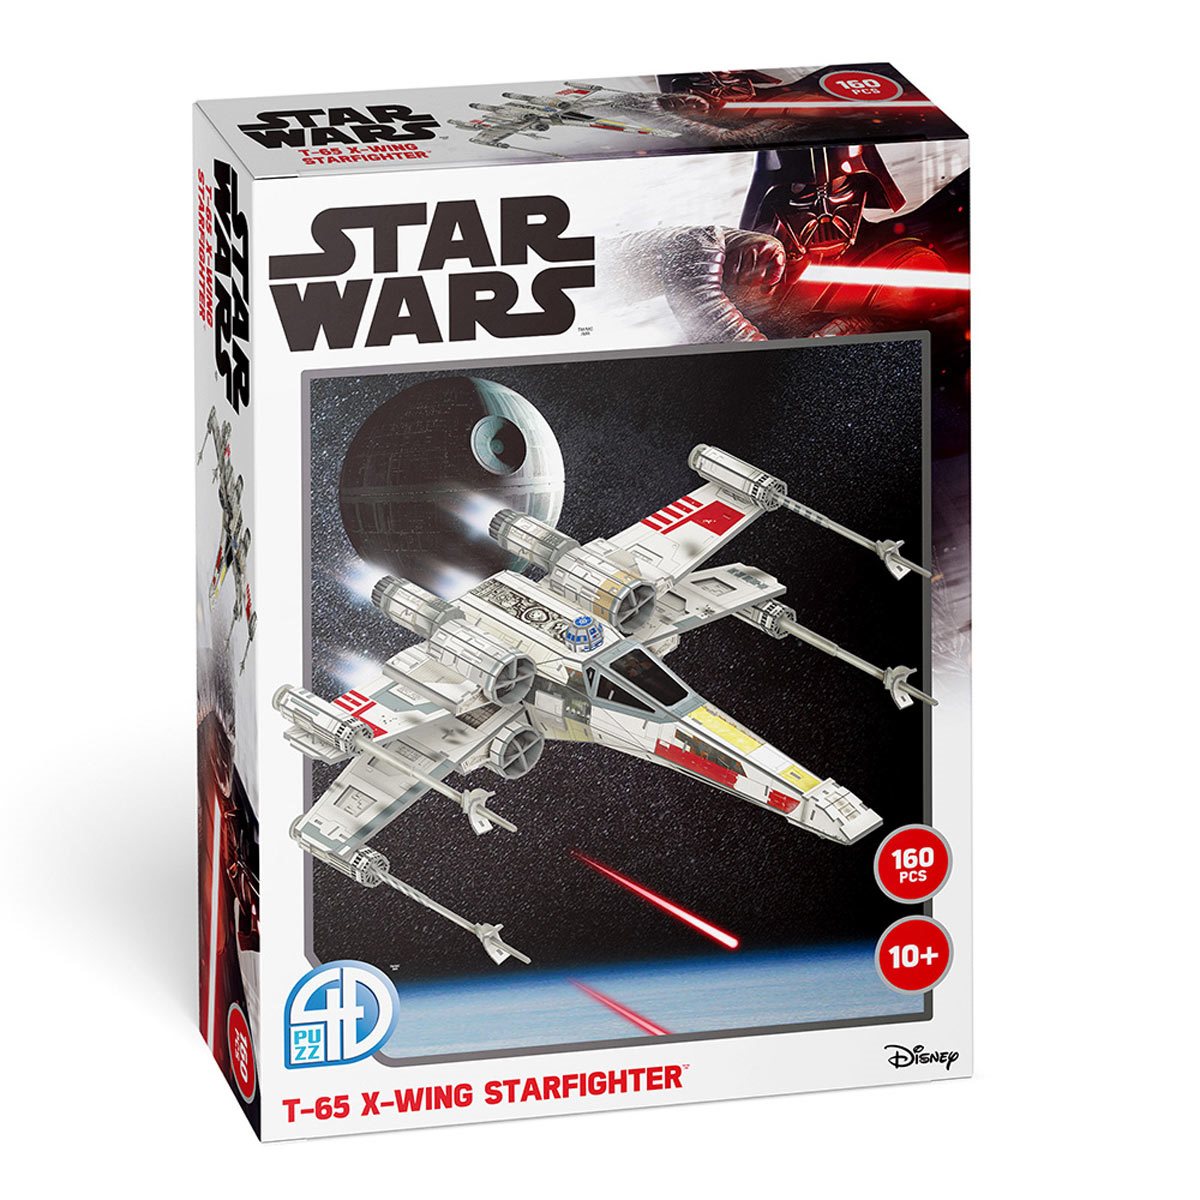 3D Metal Puzzle Star Wars Jedi X-Wing Star Fighter DIY Model 